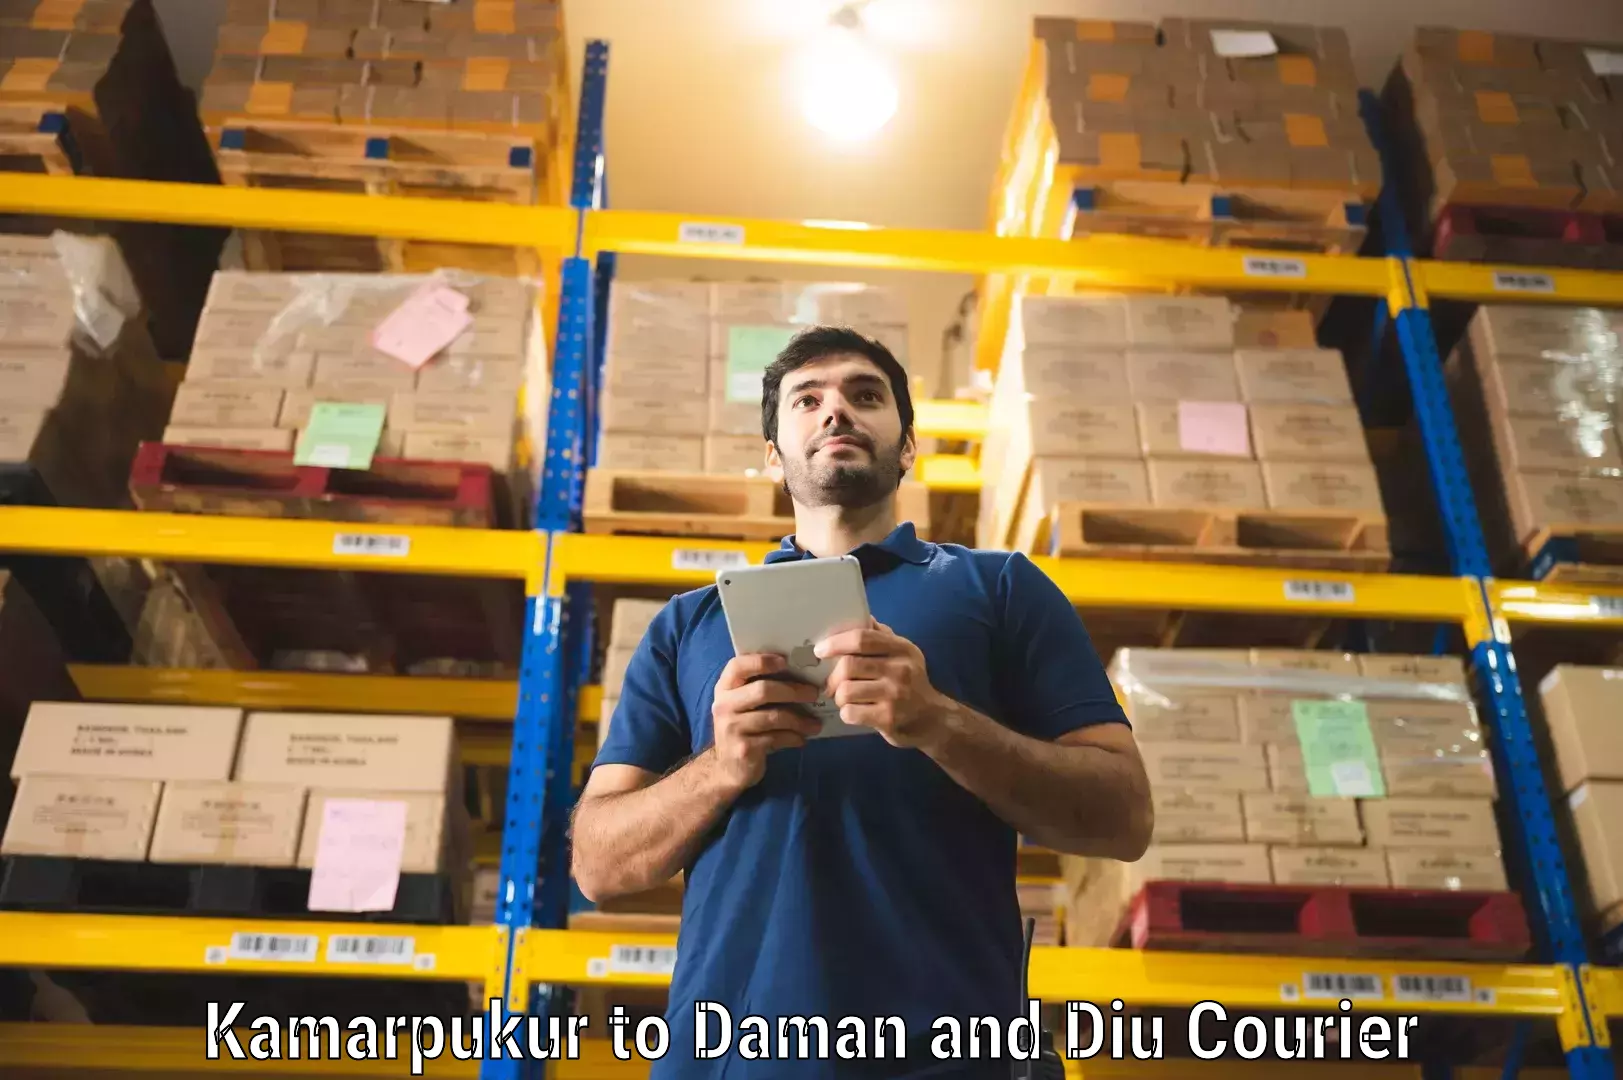 Quick booking process in Kamarpukur to Daman and Diu